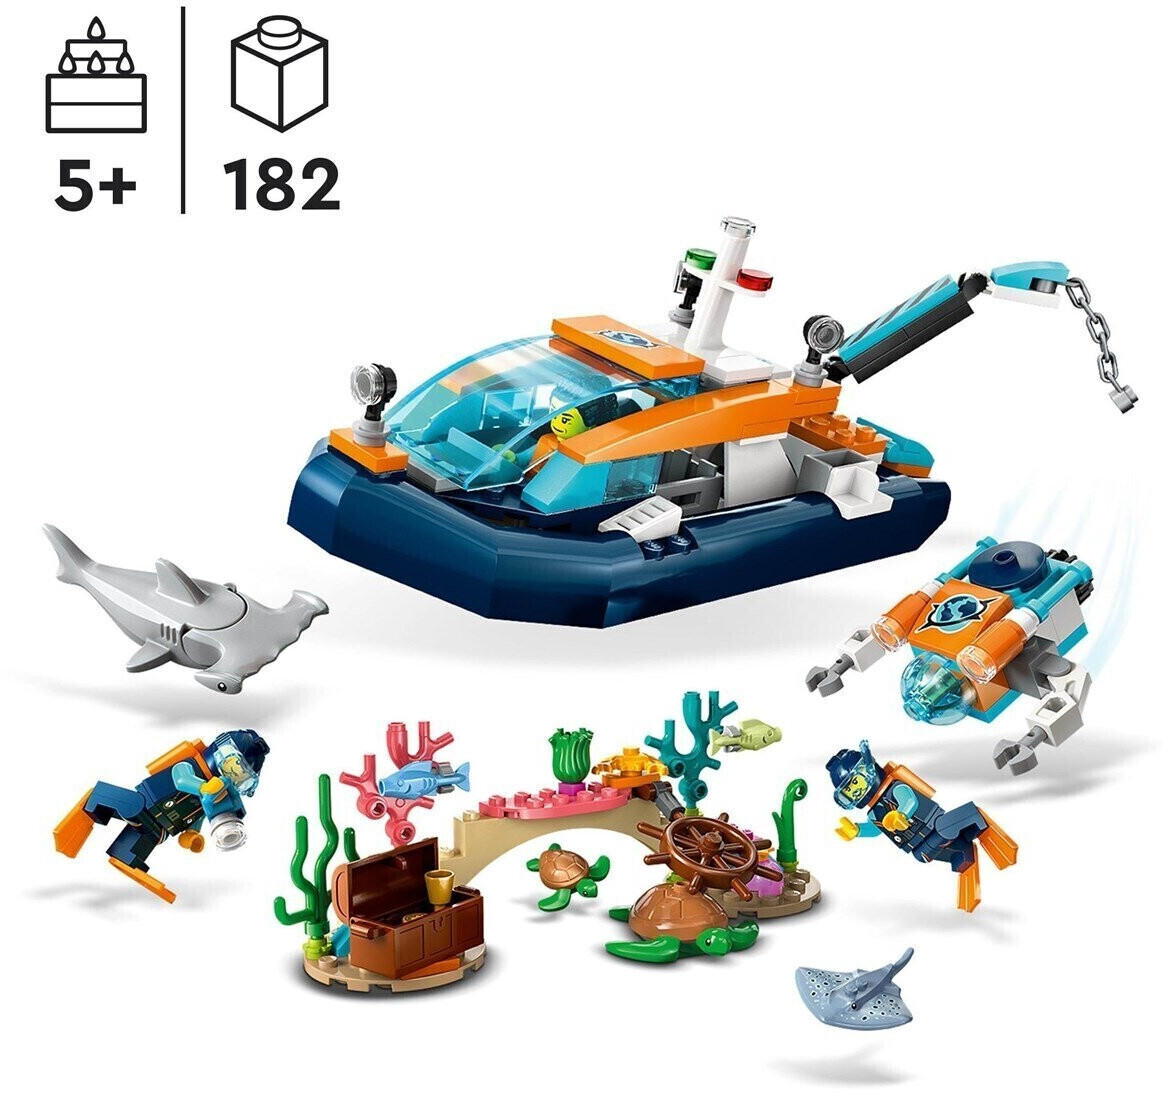 LEGO City 60368 pas cher, Le navire d'exploration arctique